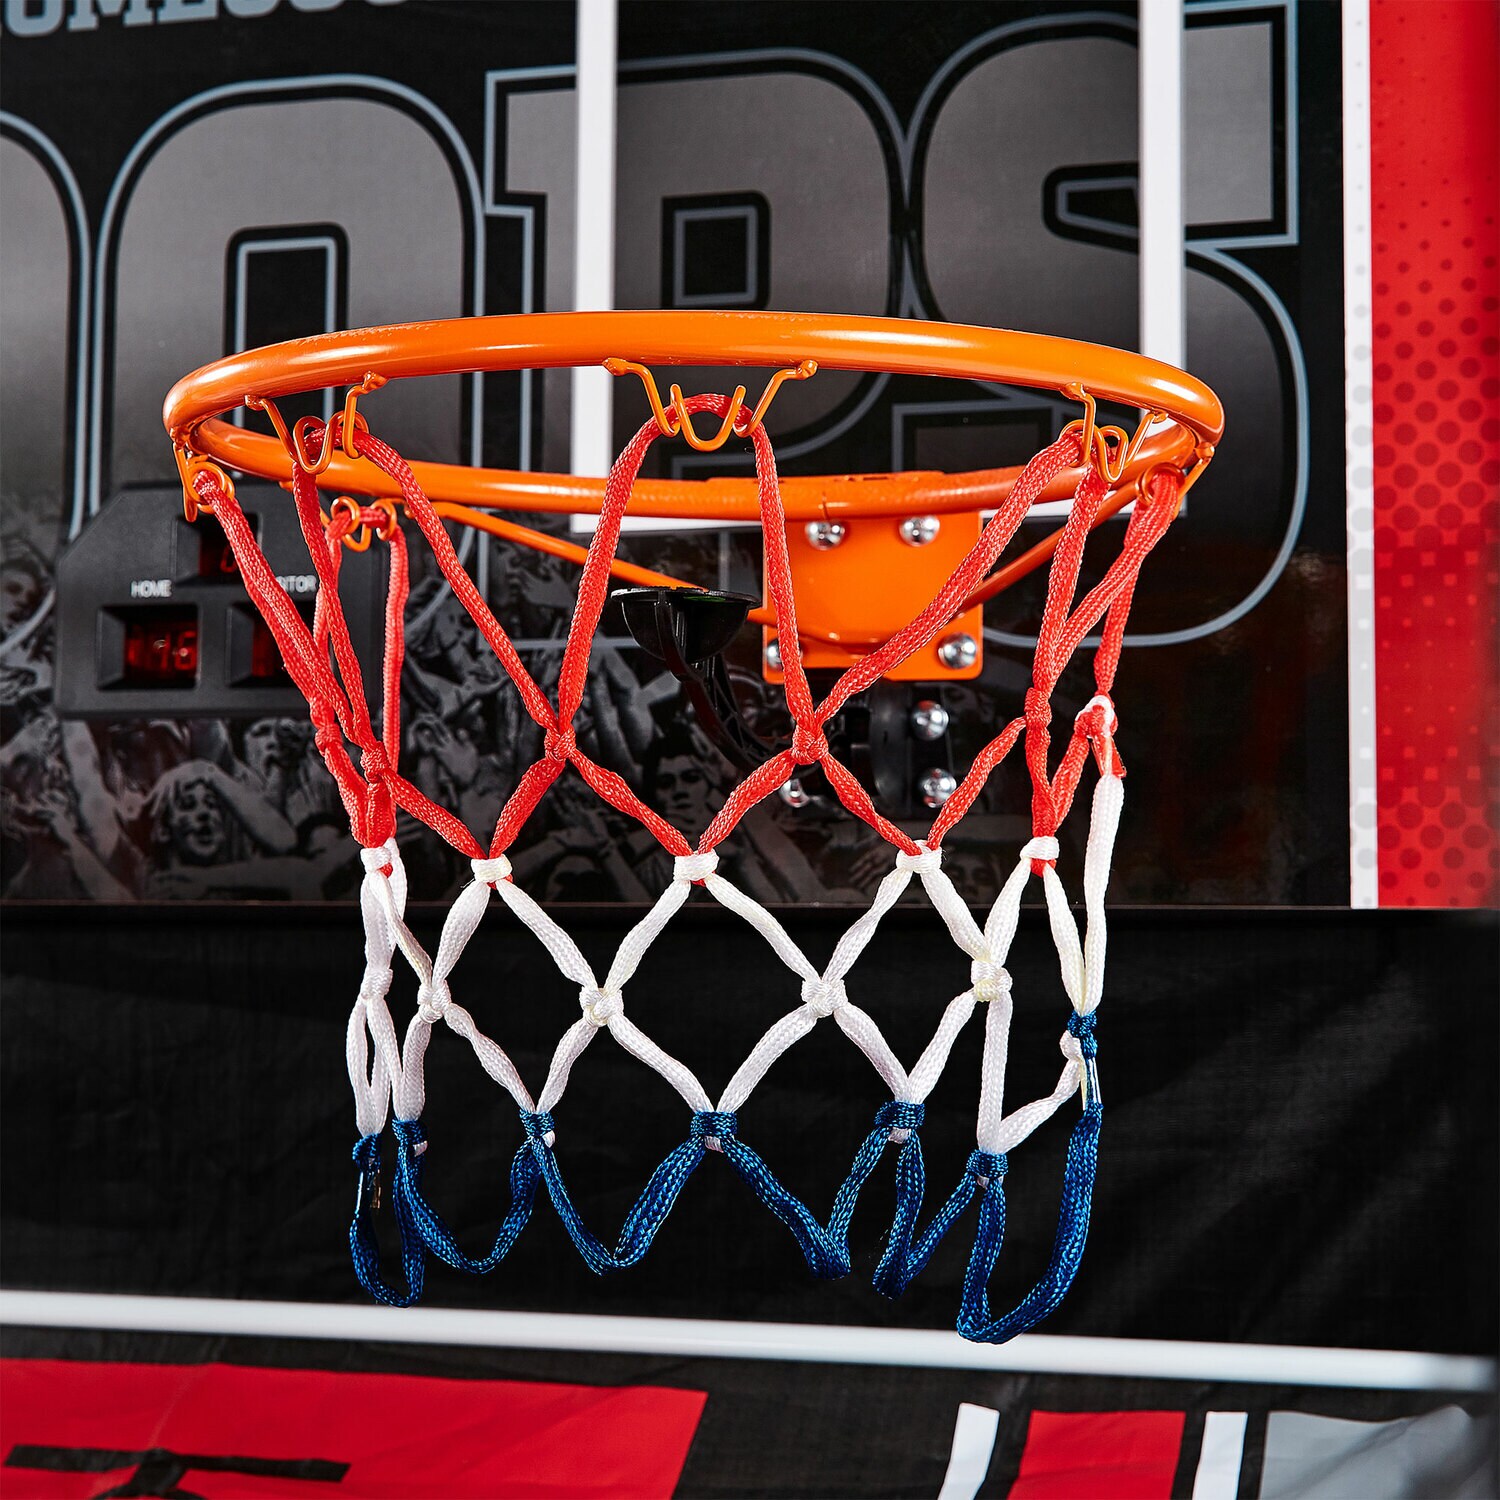 Best Buy: ESPN 2-Player Indoor Basketball Arcade Game Premium 2